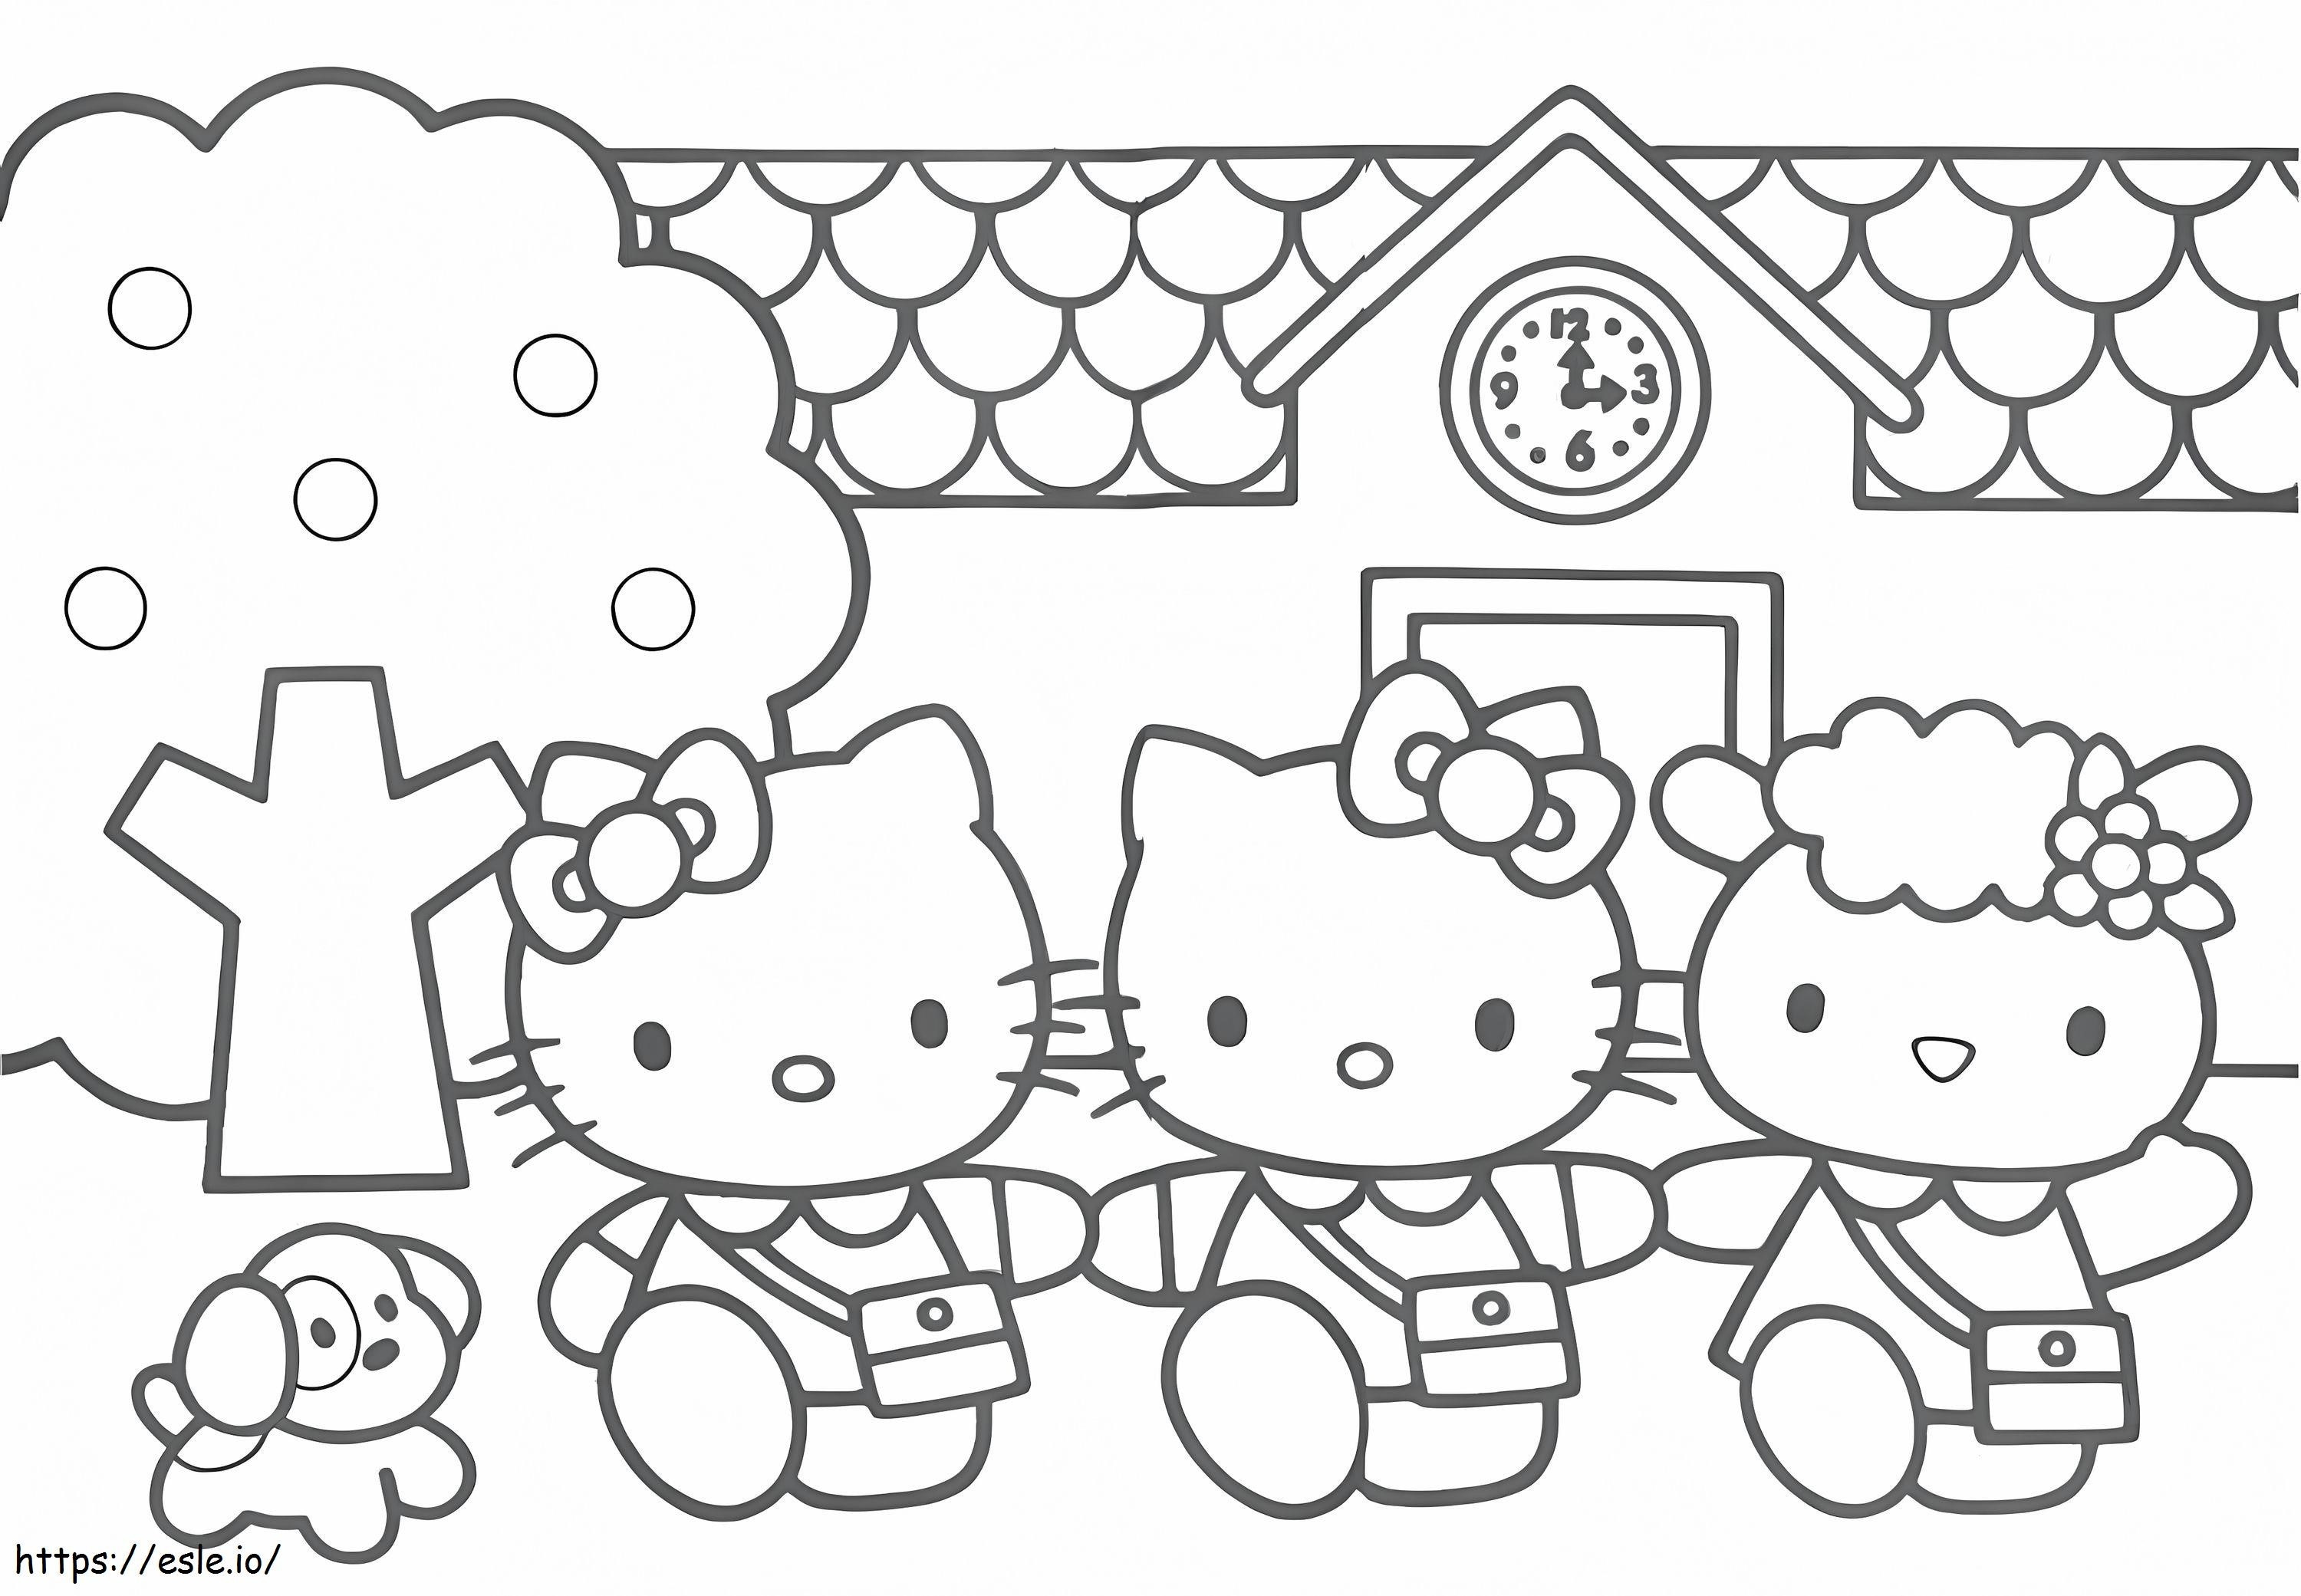 Hello Kitty ve Arkadaşları boyama